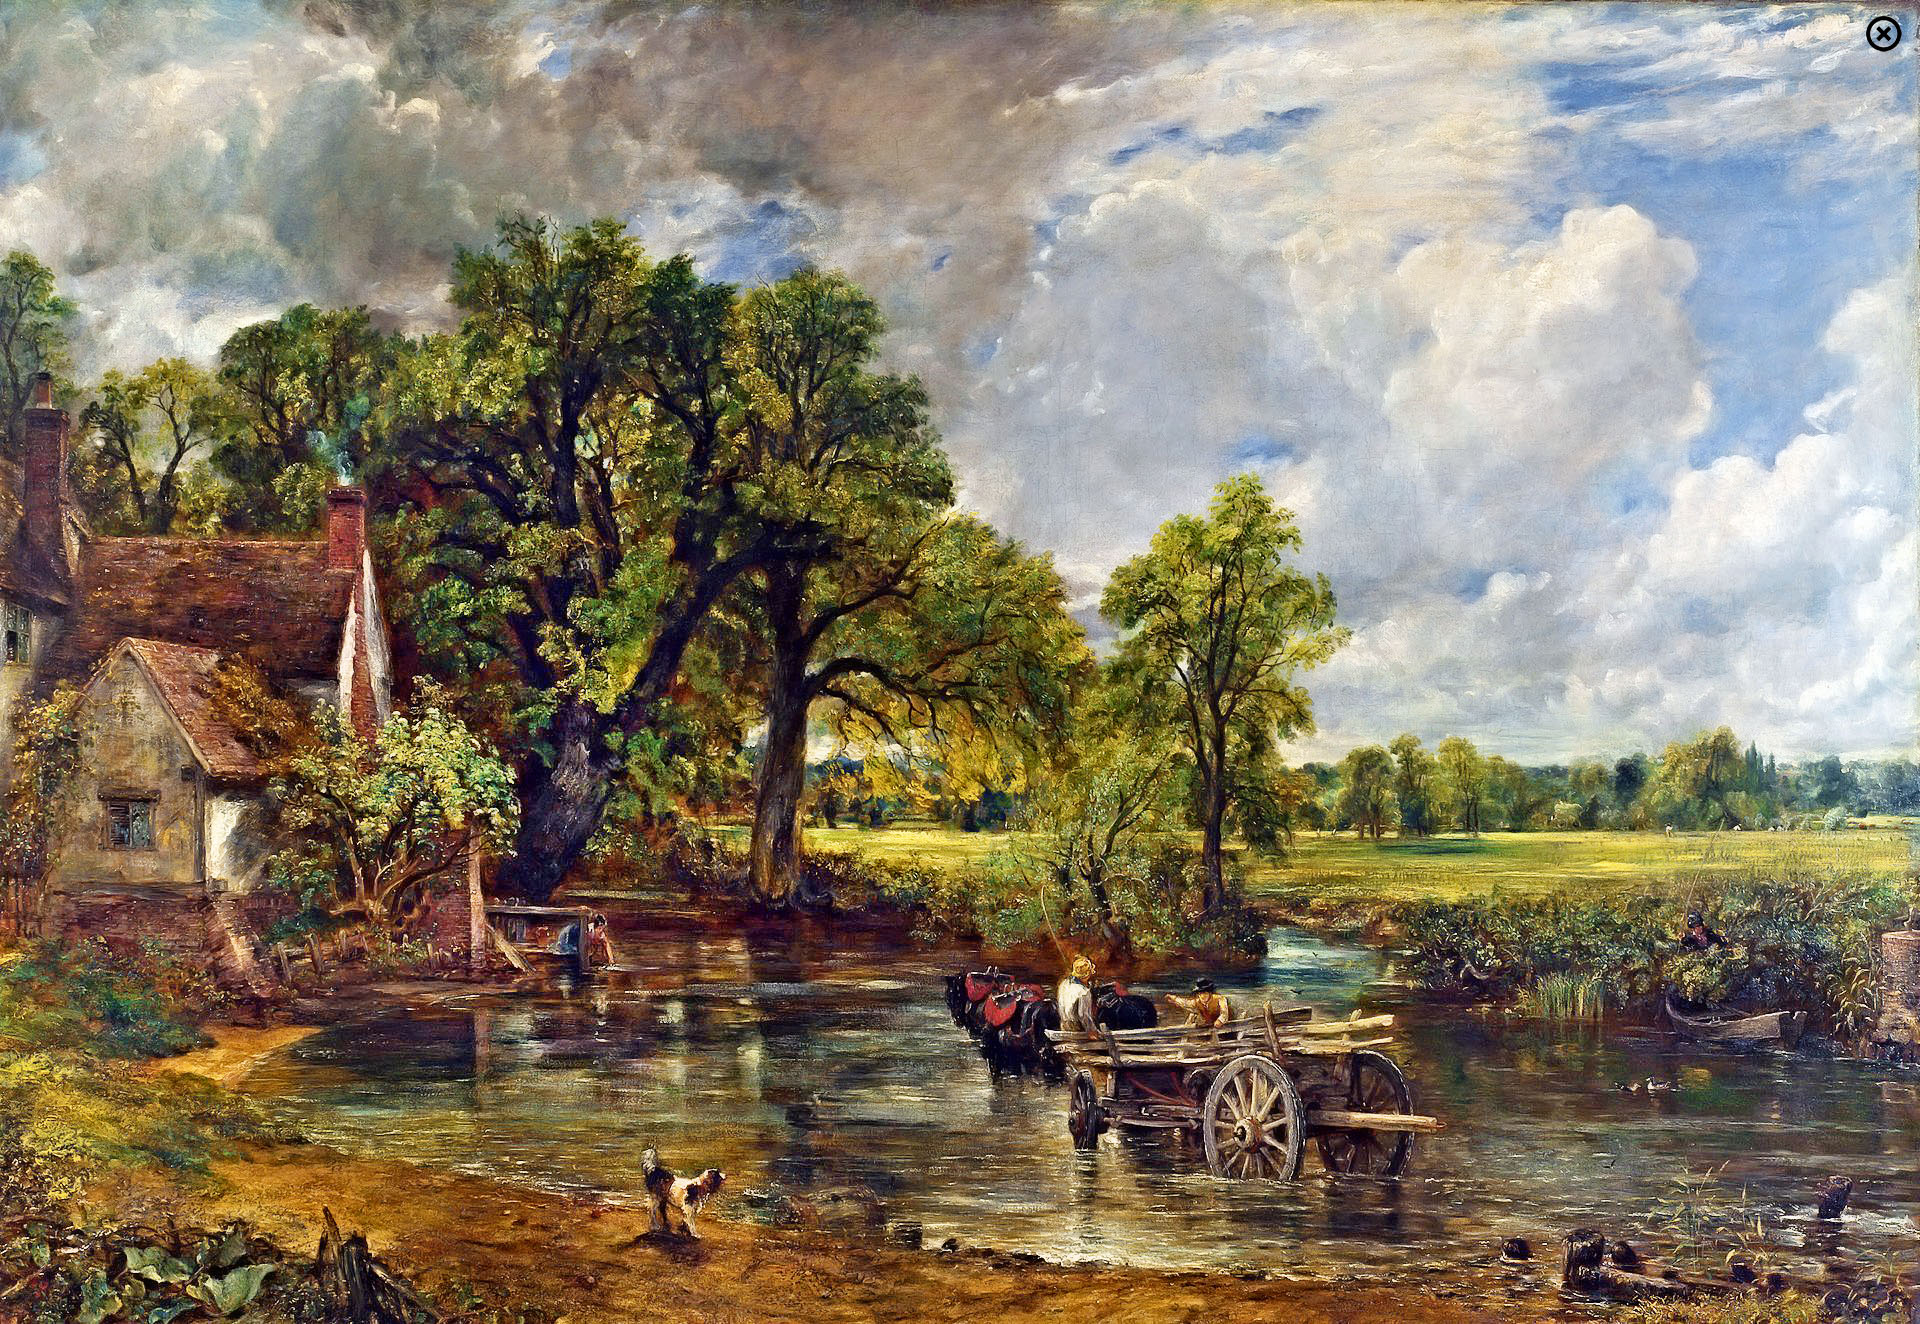 John Constable's - The Hay Wain